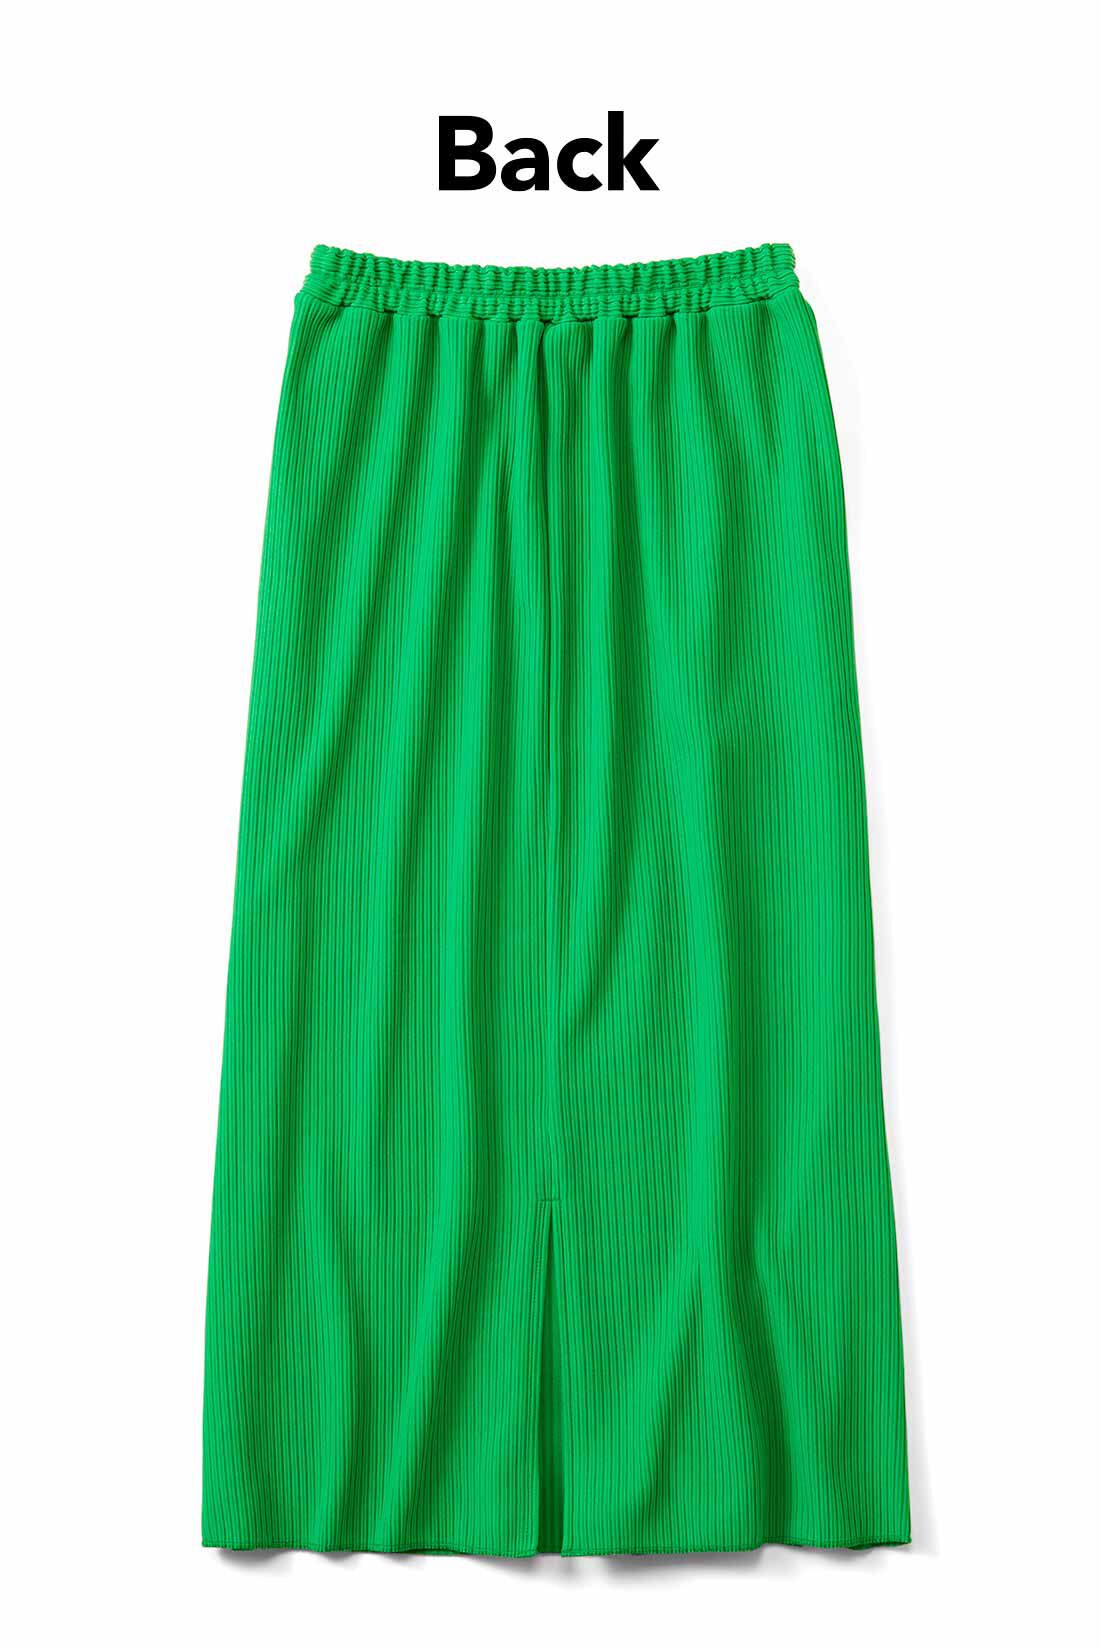 Real Stock|IEDIT[イディット]　ニットライクなリップルカットソー素材で仕立てた らくちんきれいなIラインスカート〈7〉|足さばきのいいスリット入り。お届けするカラーとは異なります。